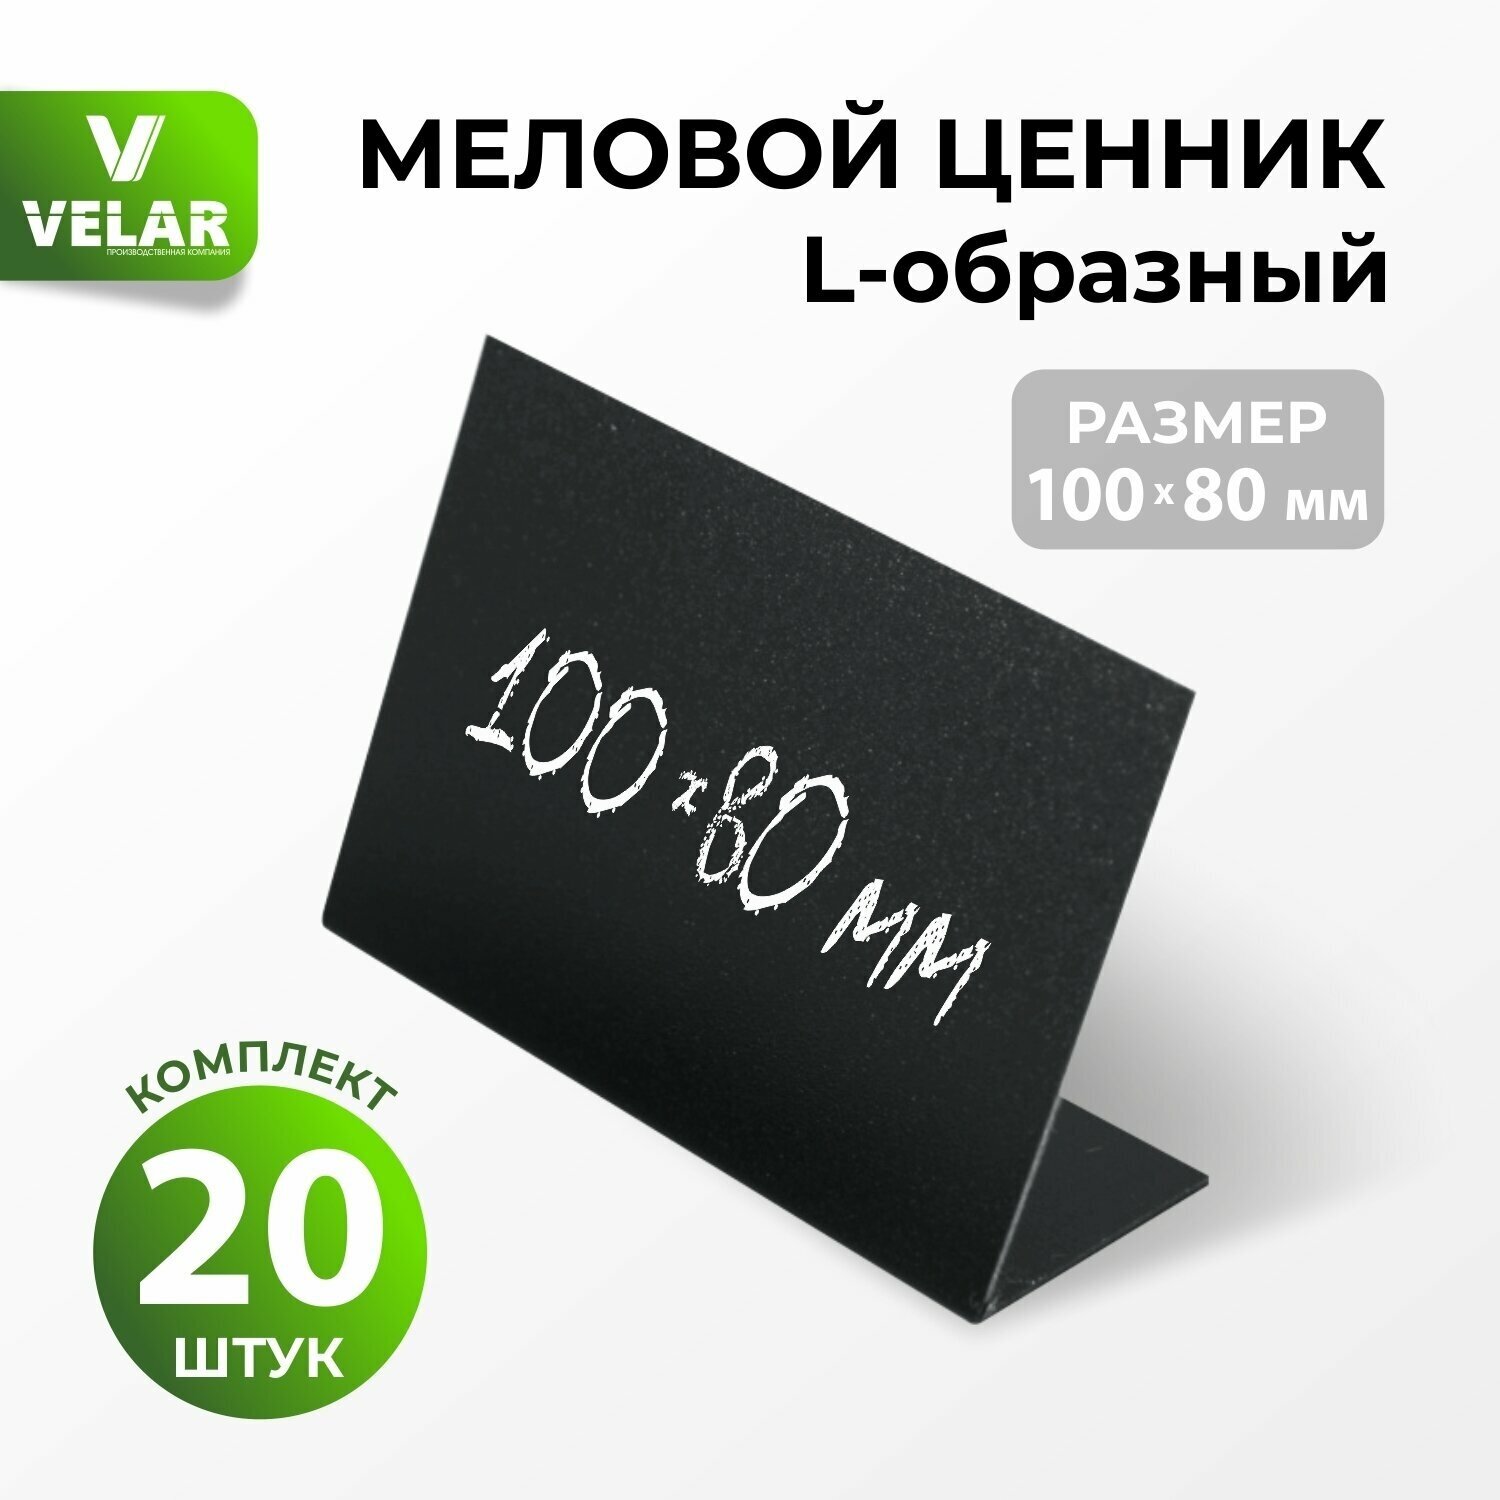 Ценники на товар Ценник меловой L-образный 100x80 мм, 20 штук, Velar